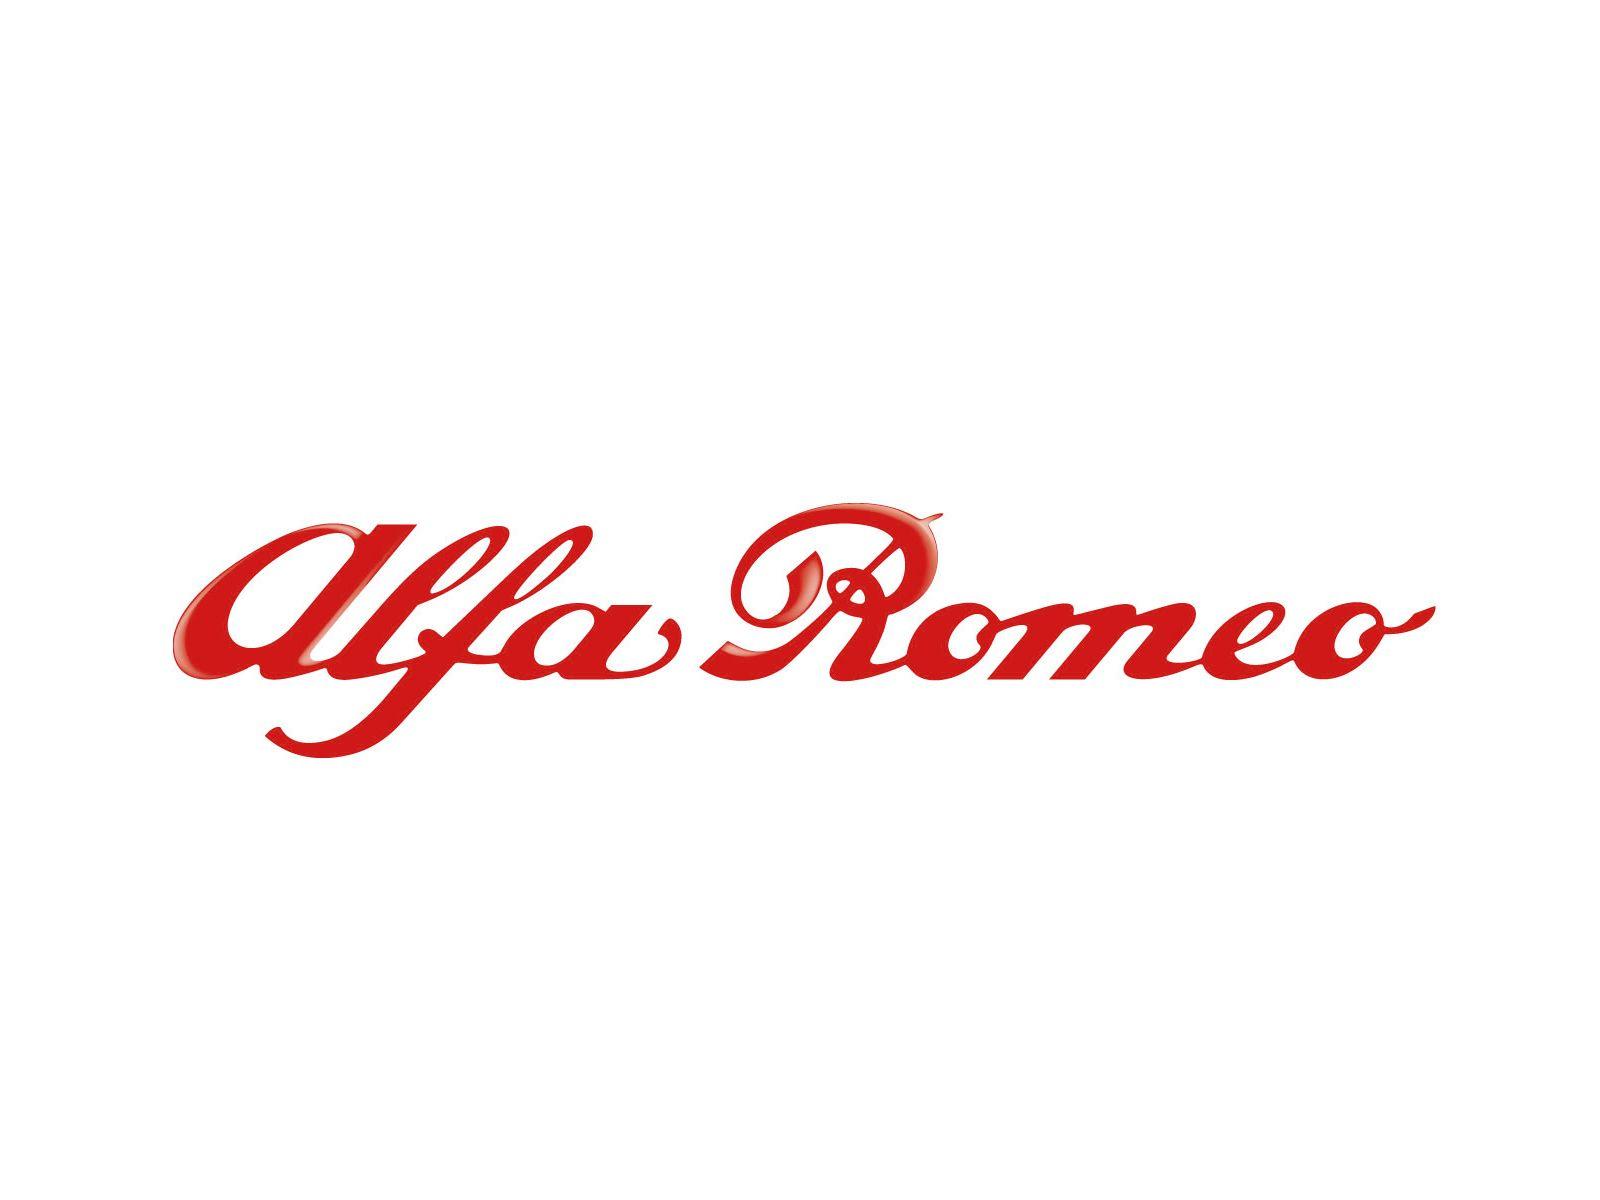 Alfa Romeo Logo Wallpaper. Cool Cars Wallpaper